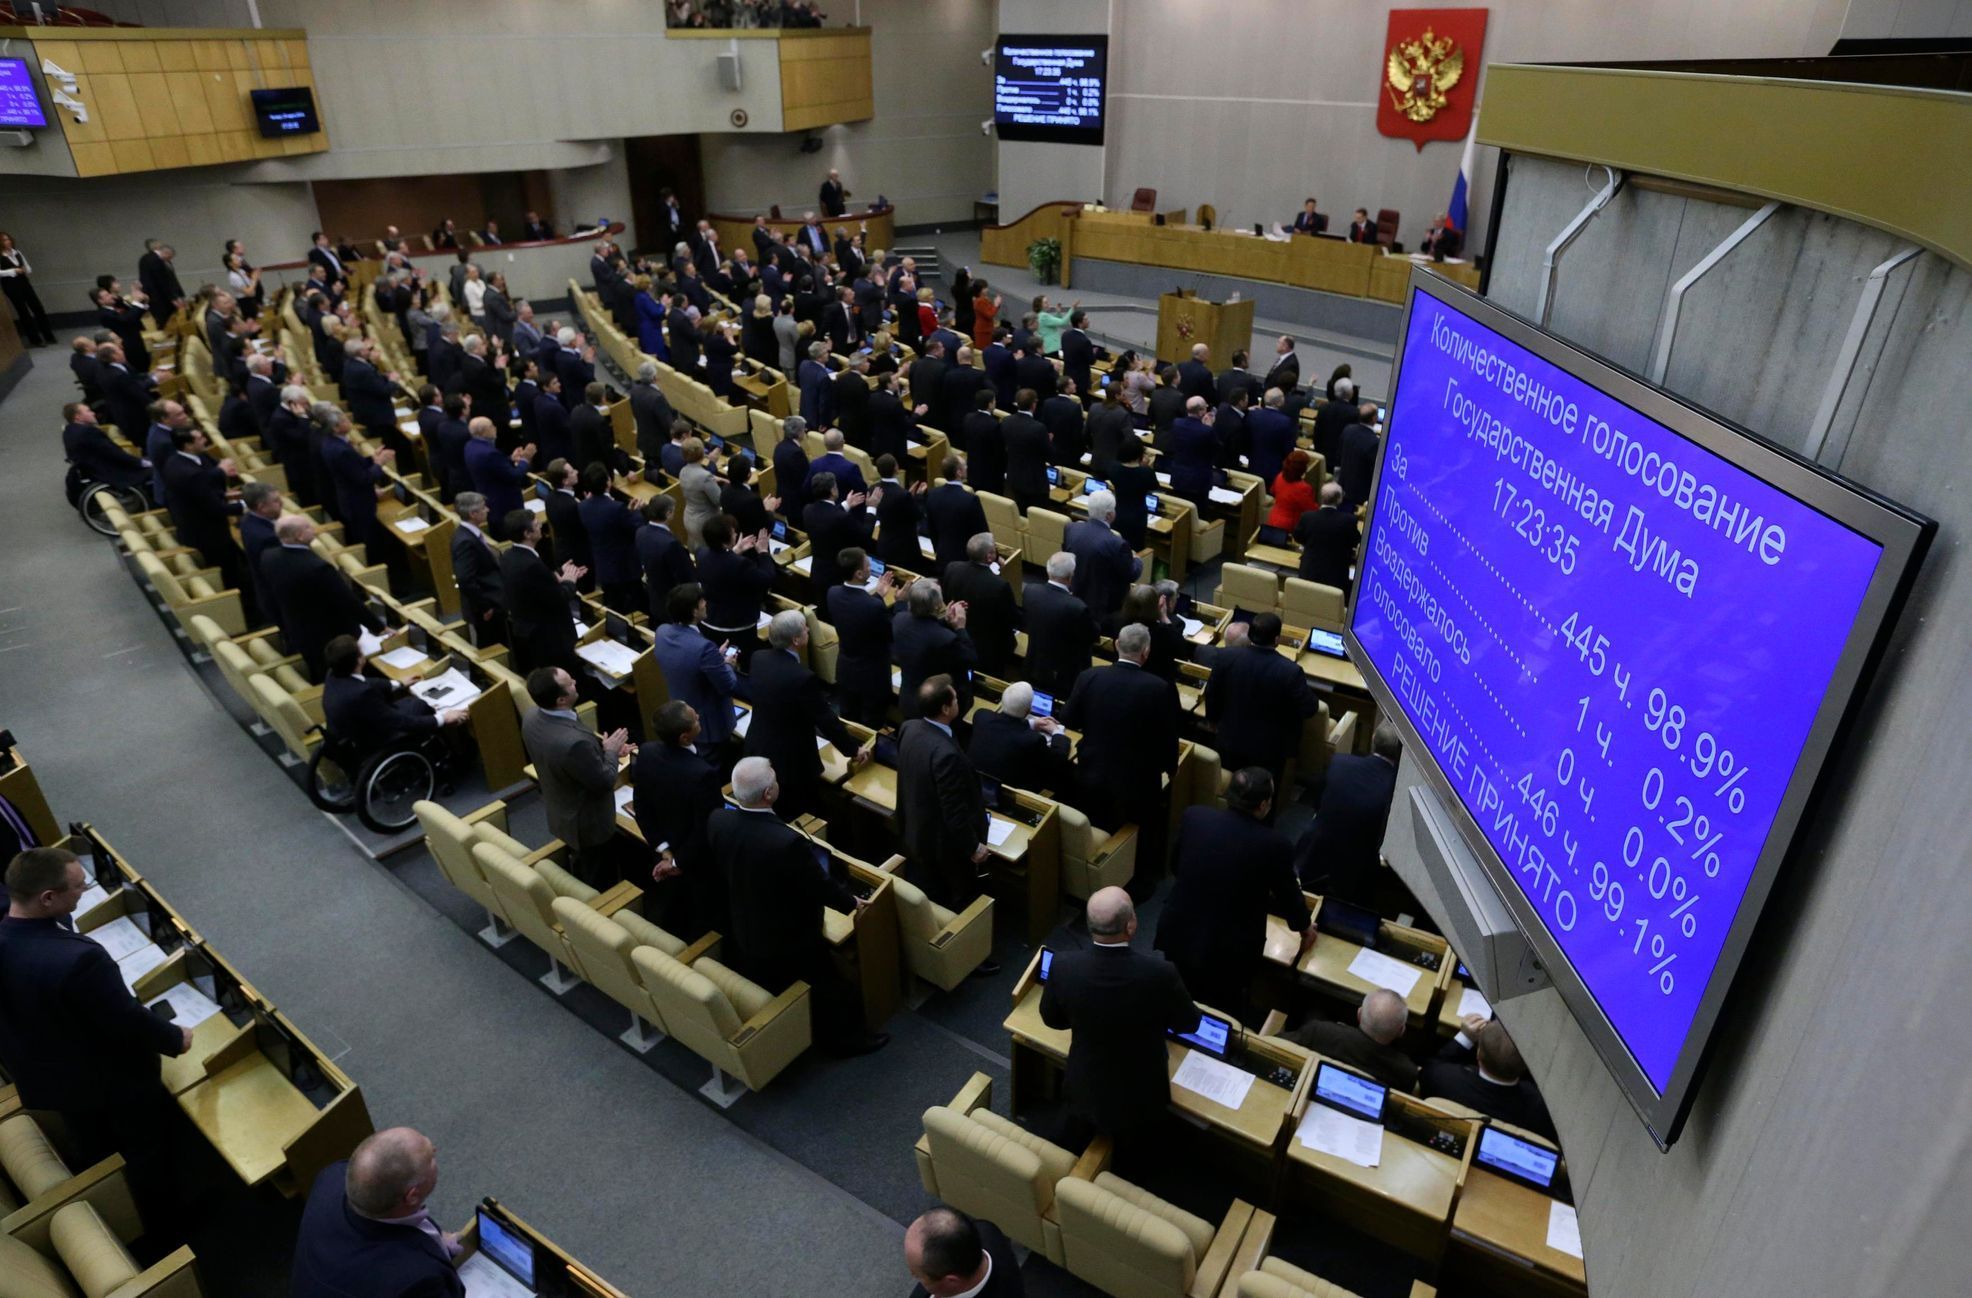 Ruská Státní duma - hlasování o anexi Krymu